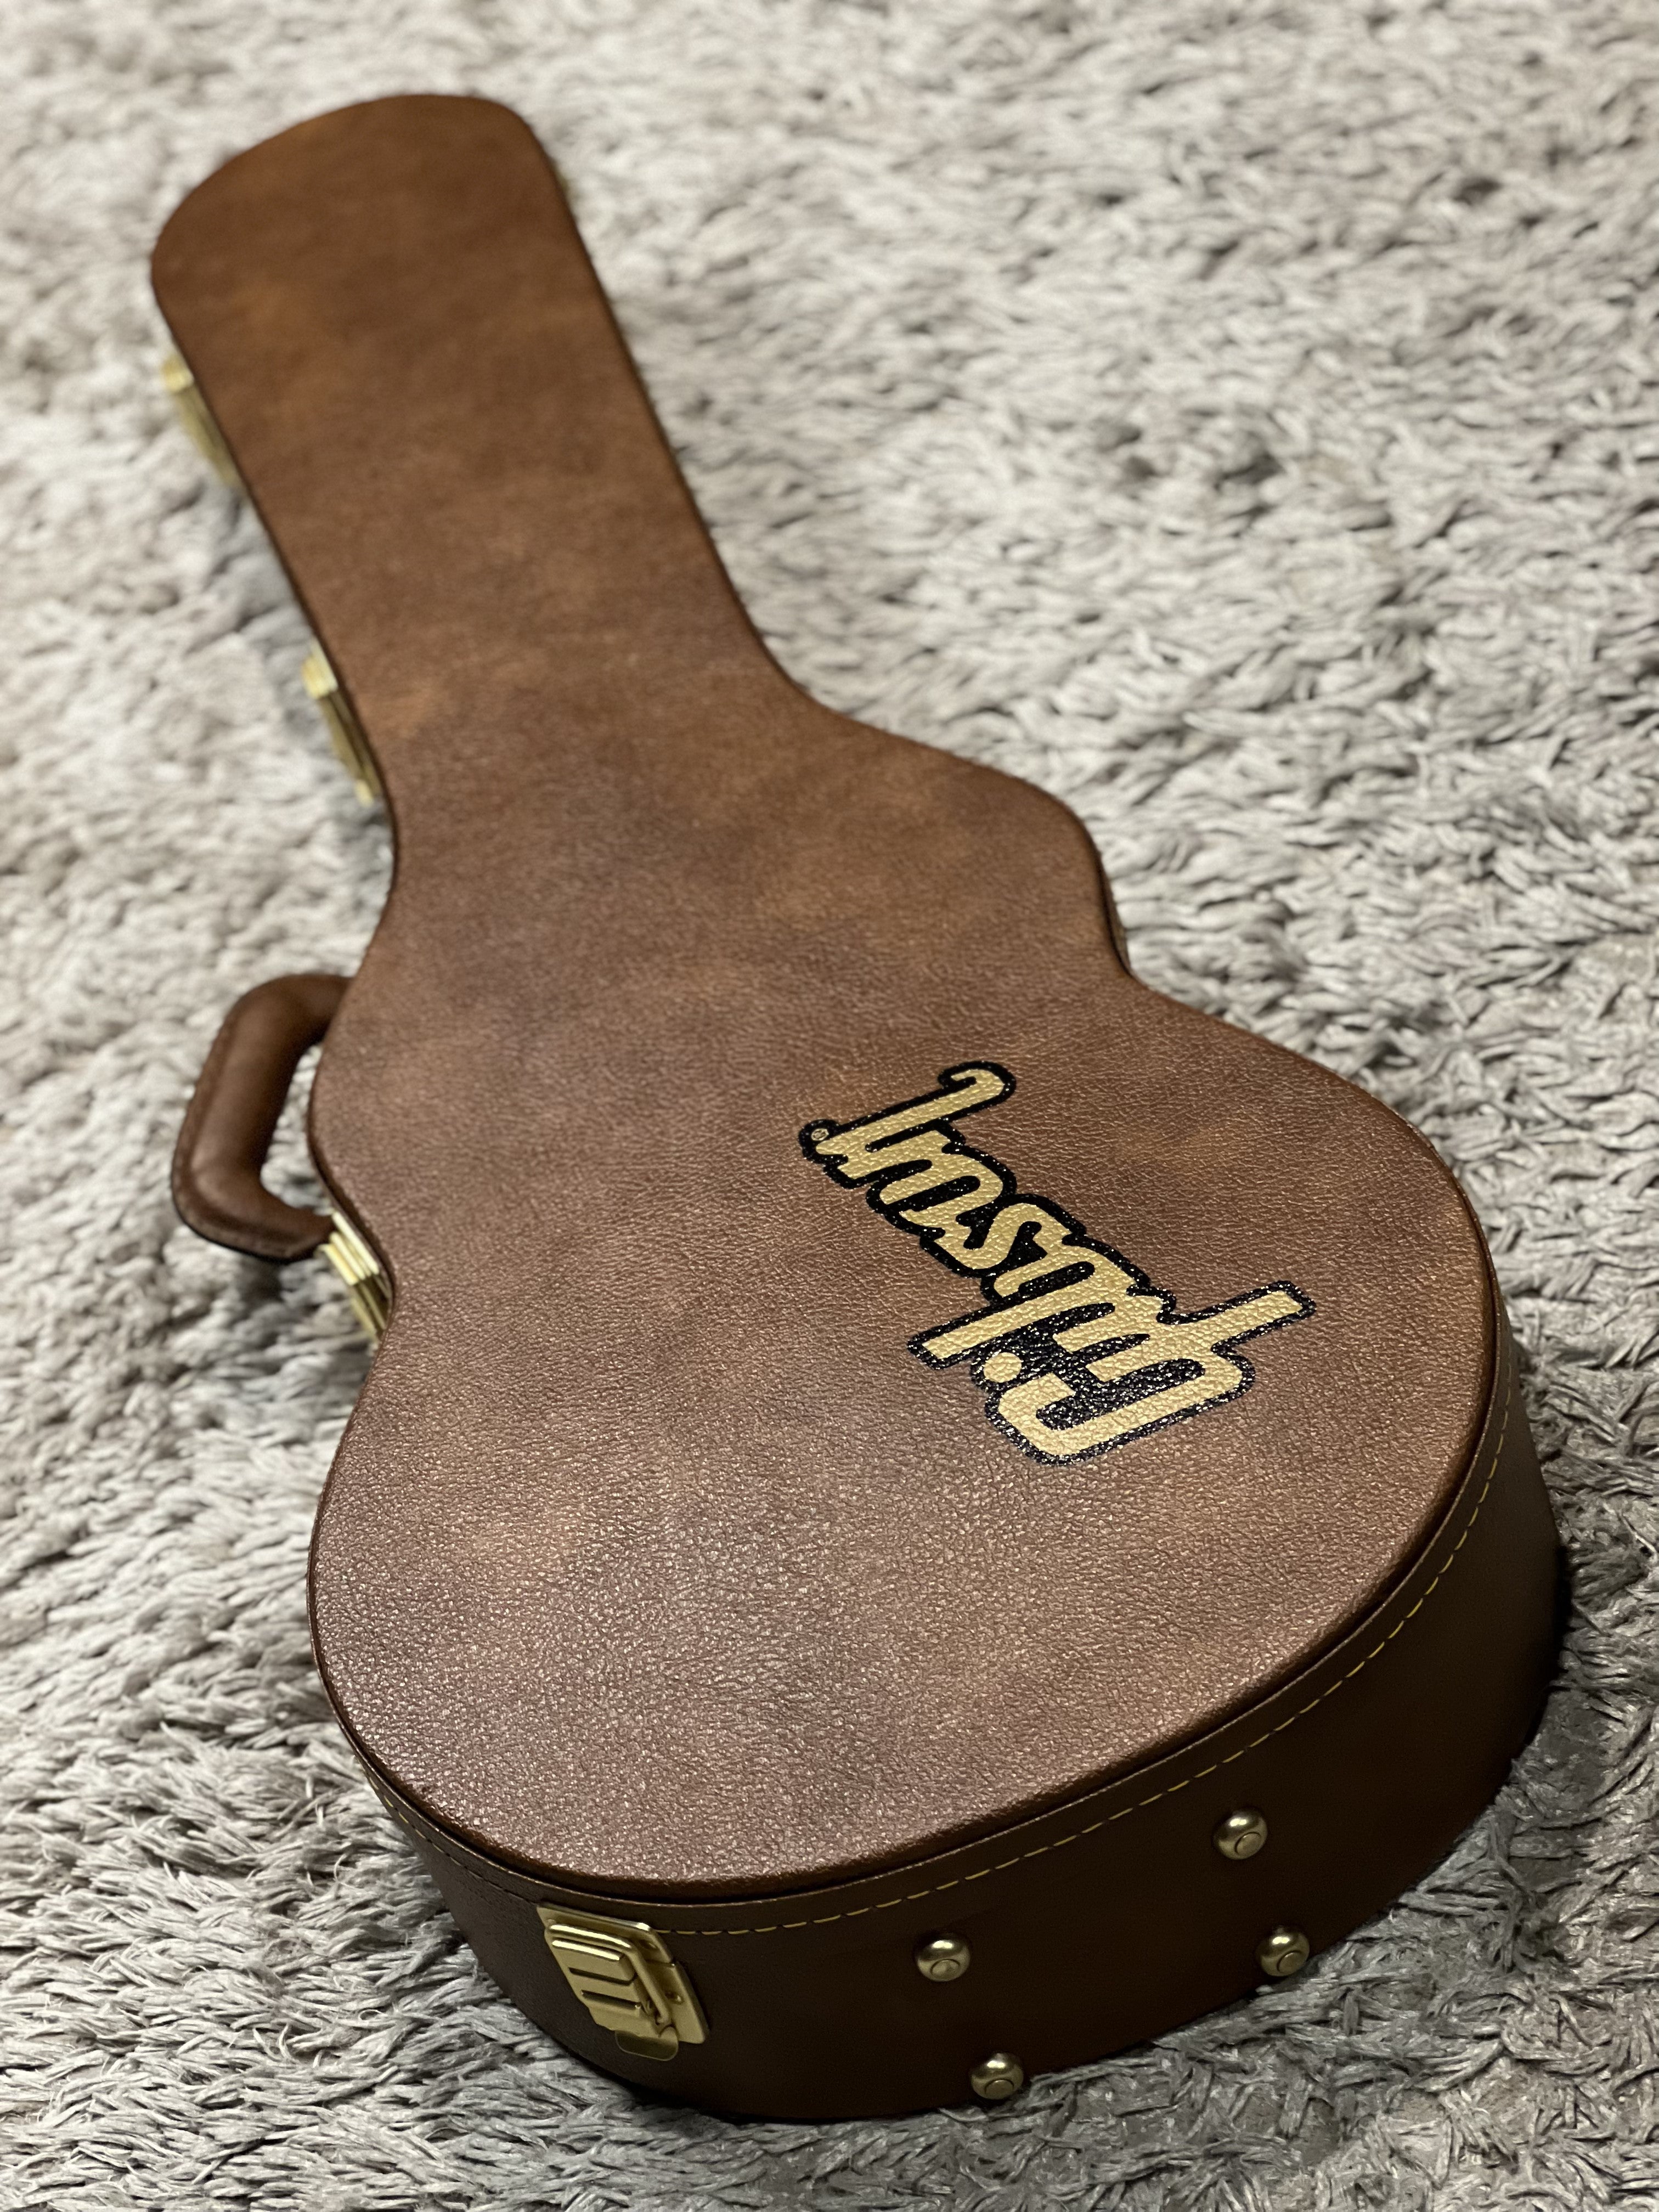 Gibson Hardcase Les Paul Original Hardshell Case Brown 